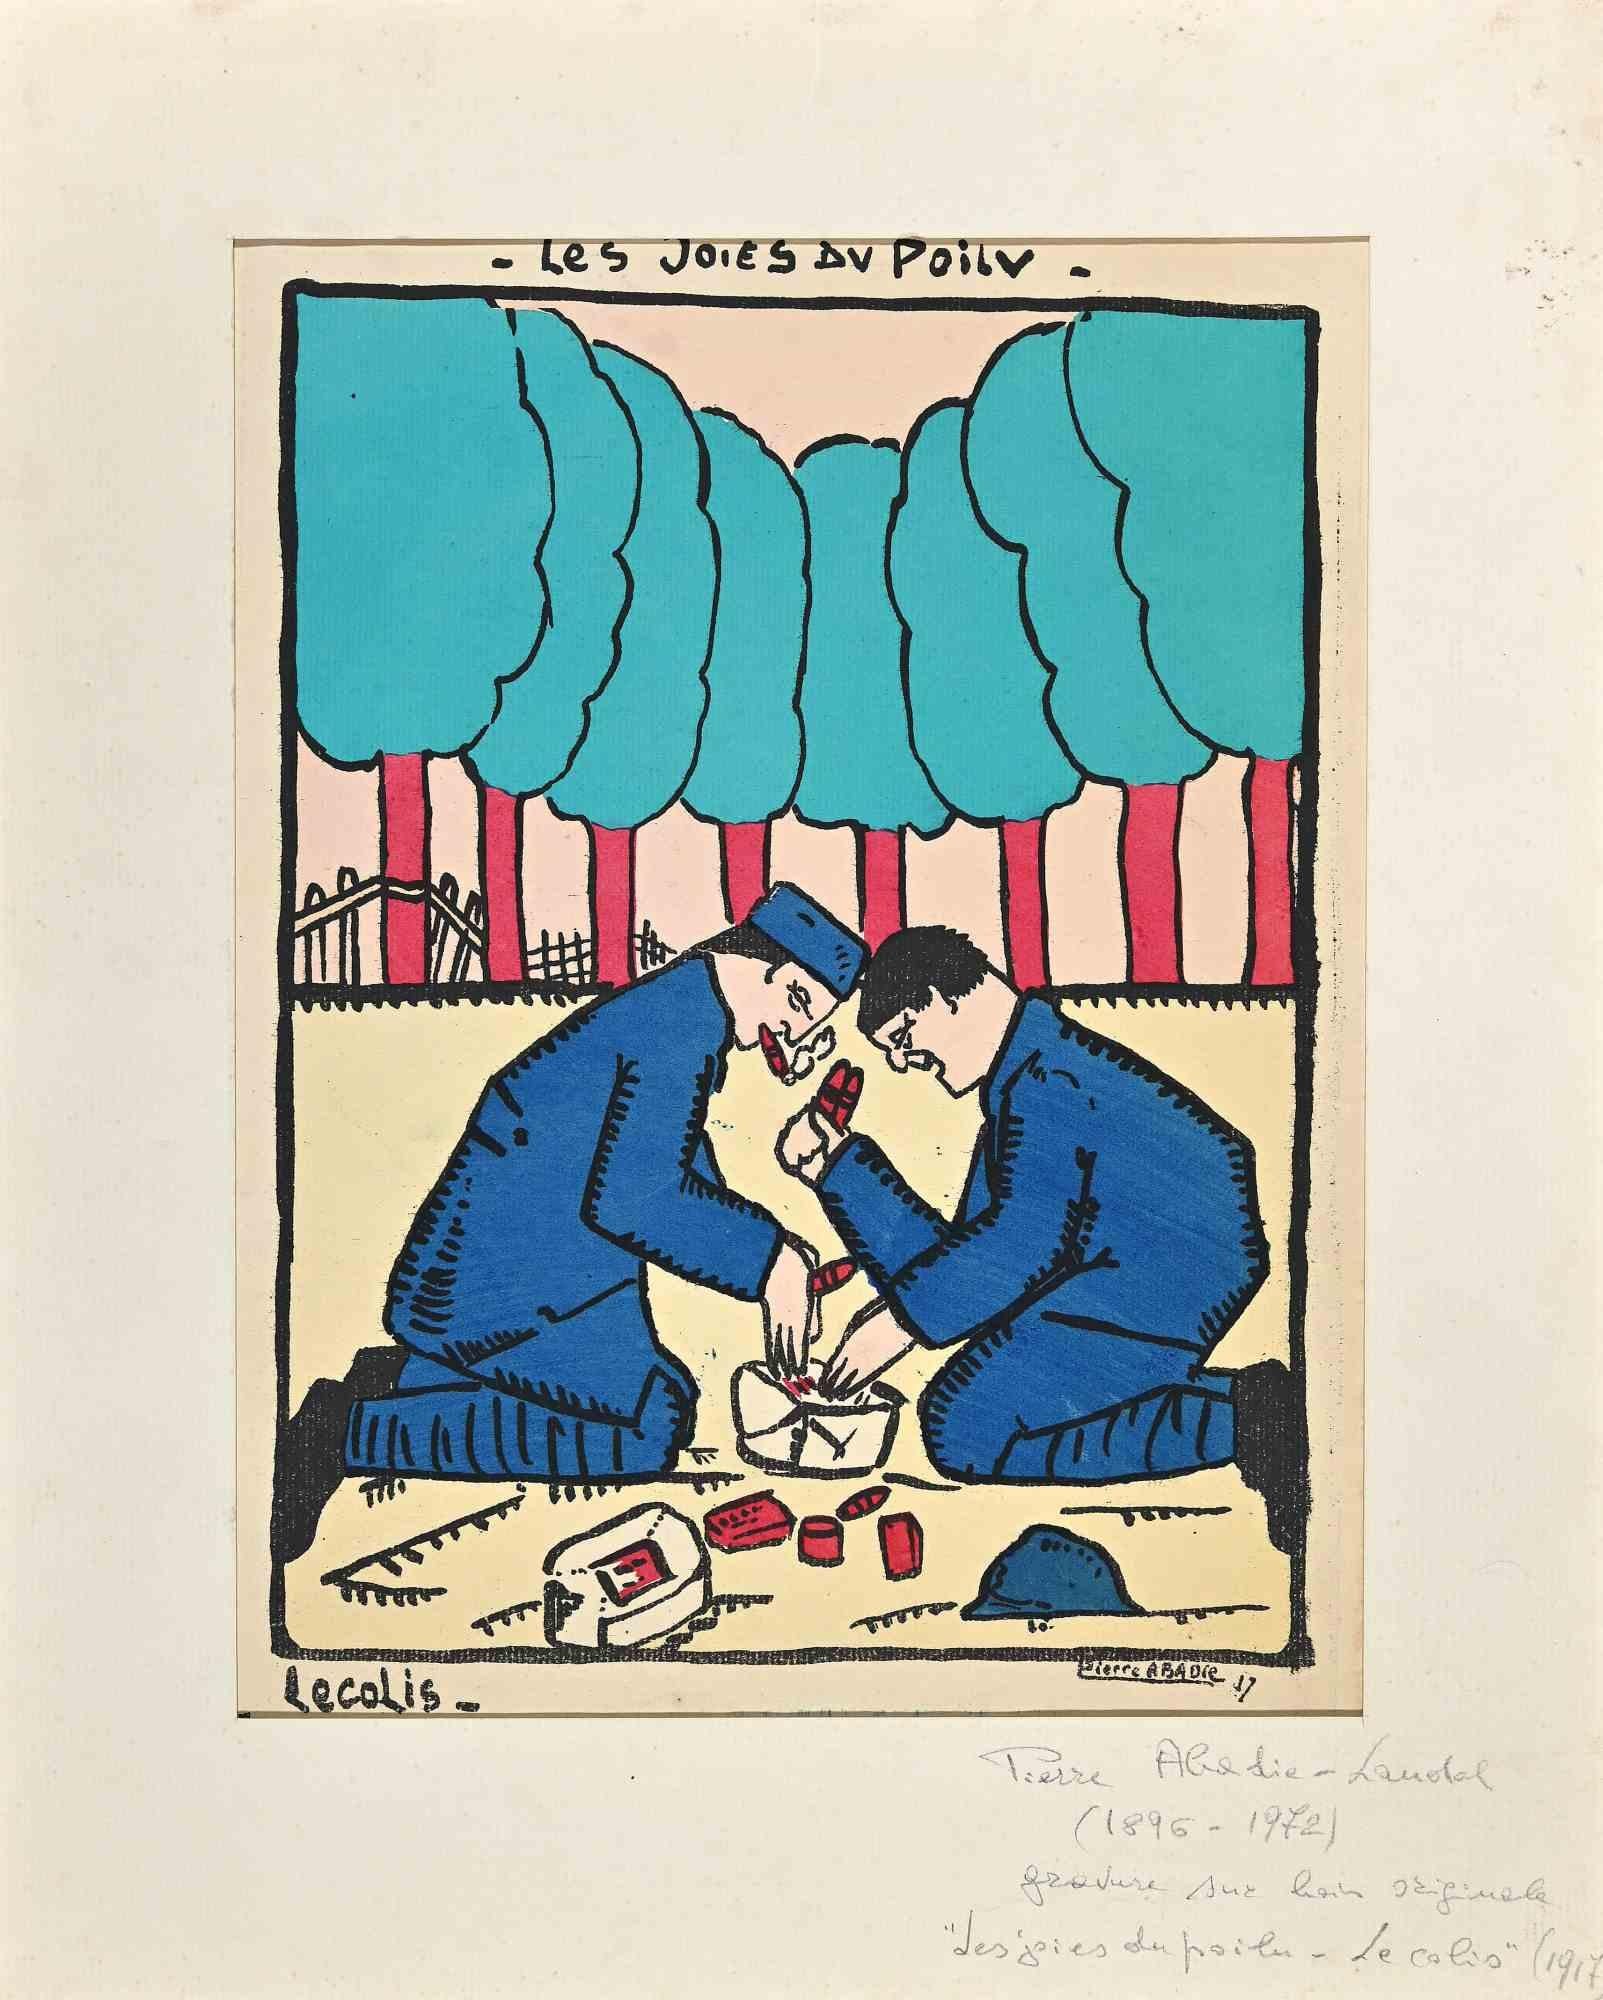 The Joys of the Hairy ist ein Holzschnitt von Pierre Abadie-Landel (1896-1972) aus dem Jahr 1917.

Dieser Holzschnitt ist in einem weißen Passepartout (40x32,5 cm) enthalten.

Guter Zustand.

Handsigniert.
